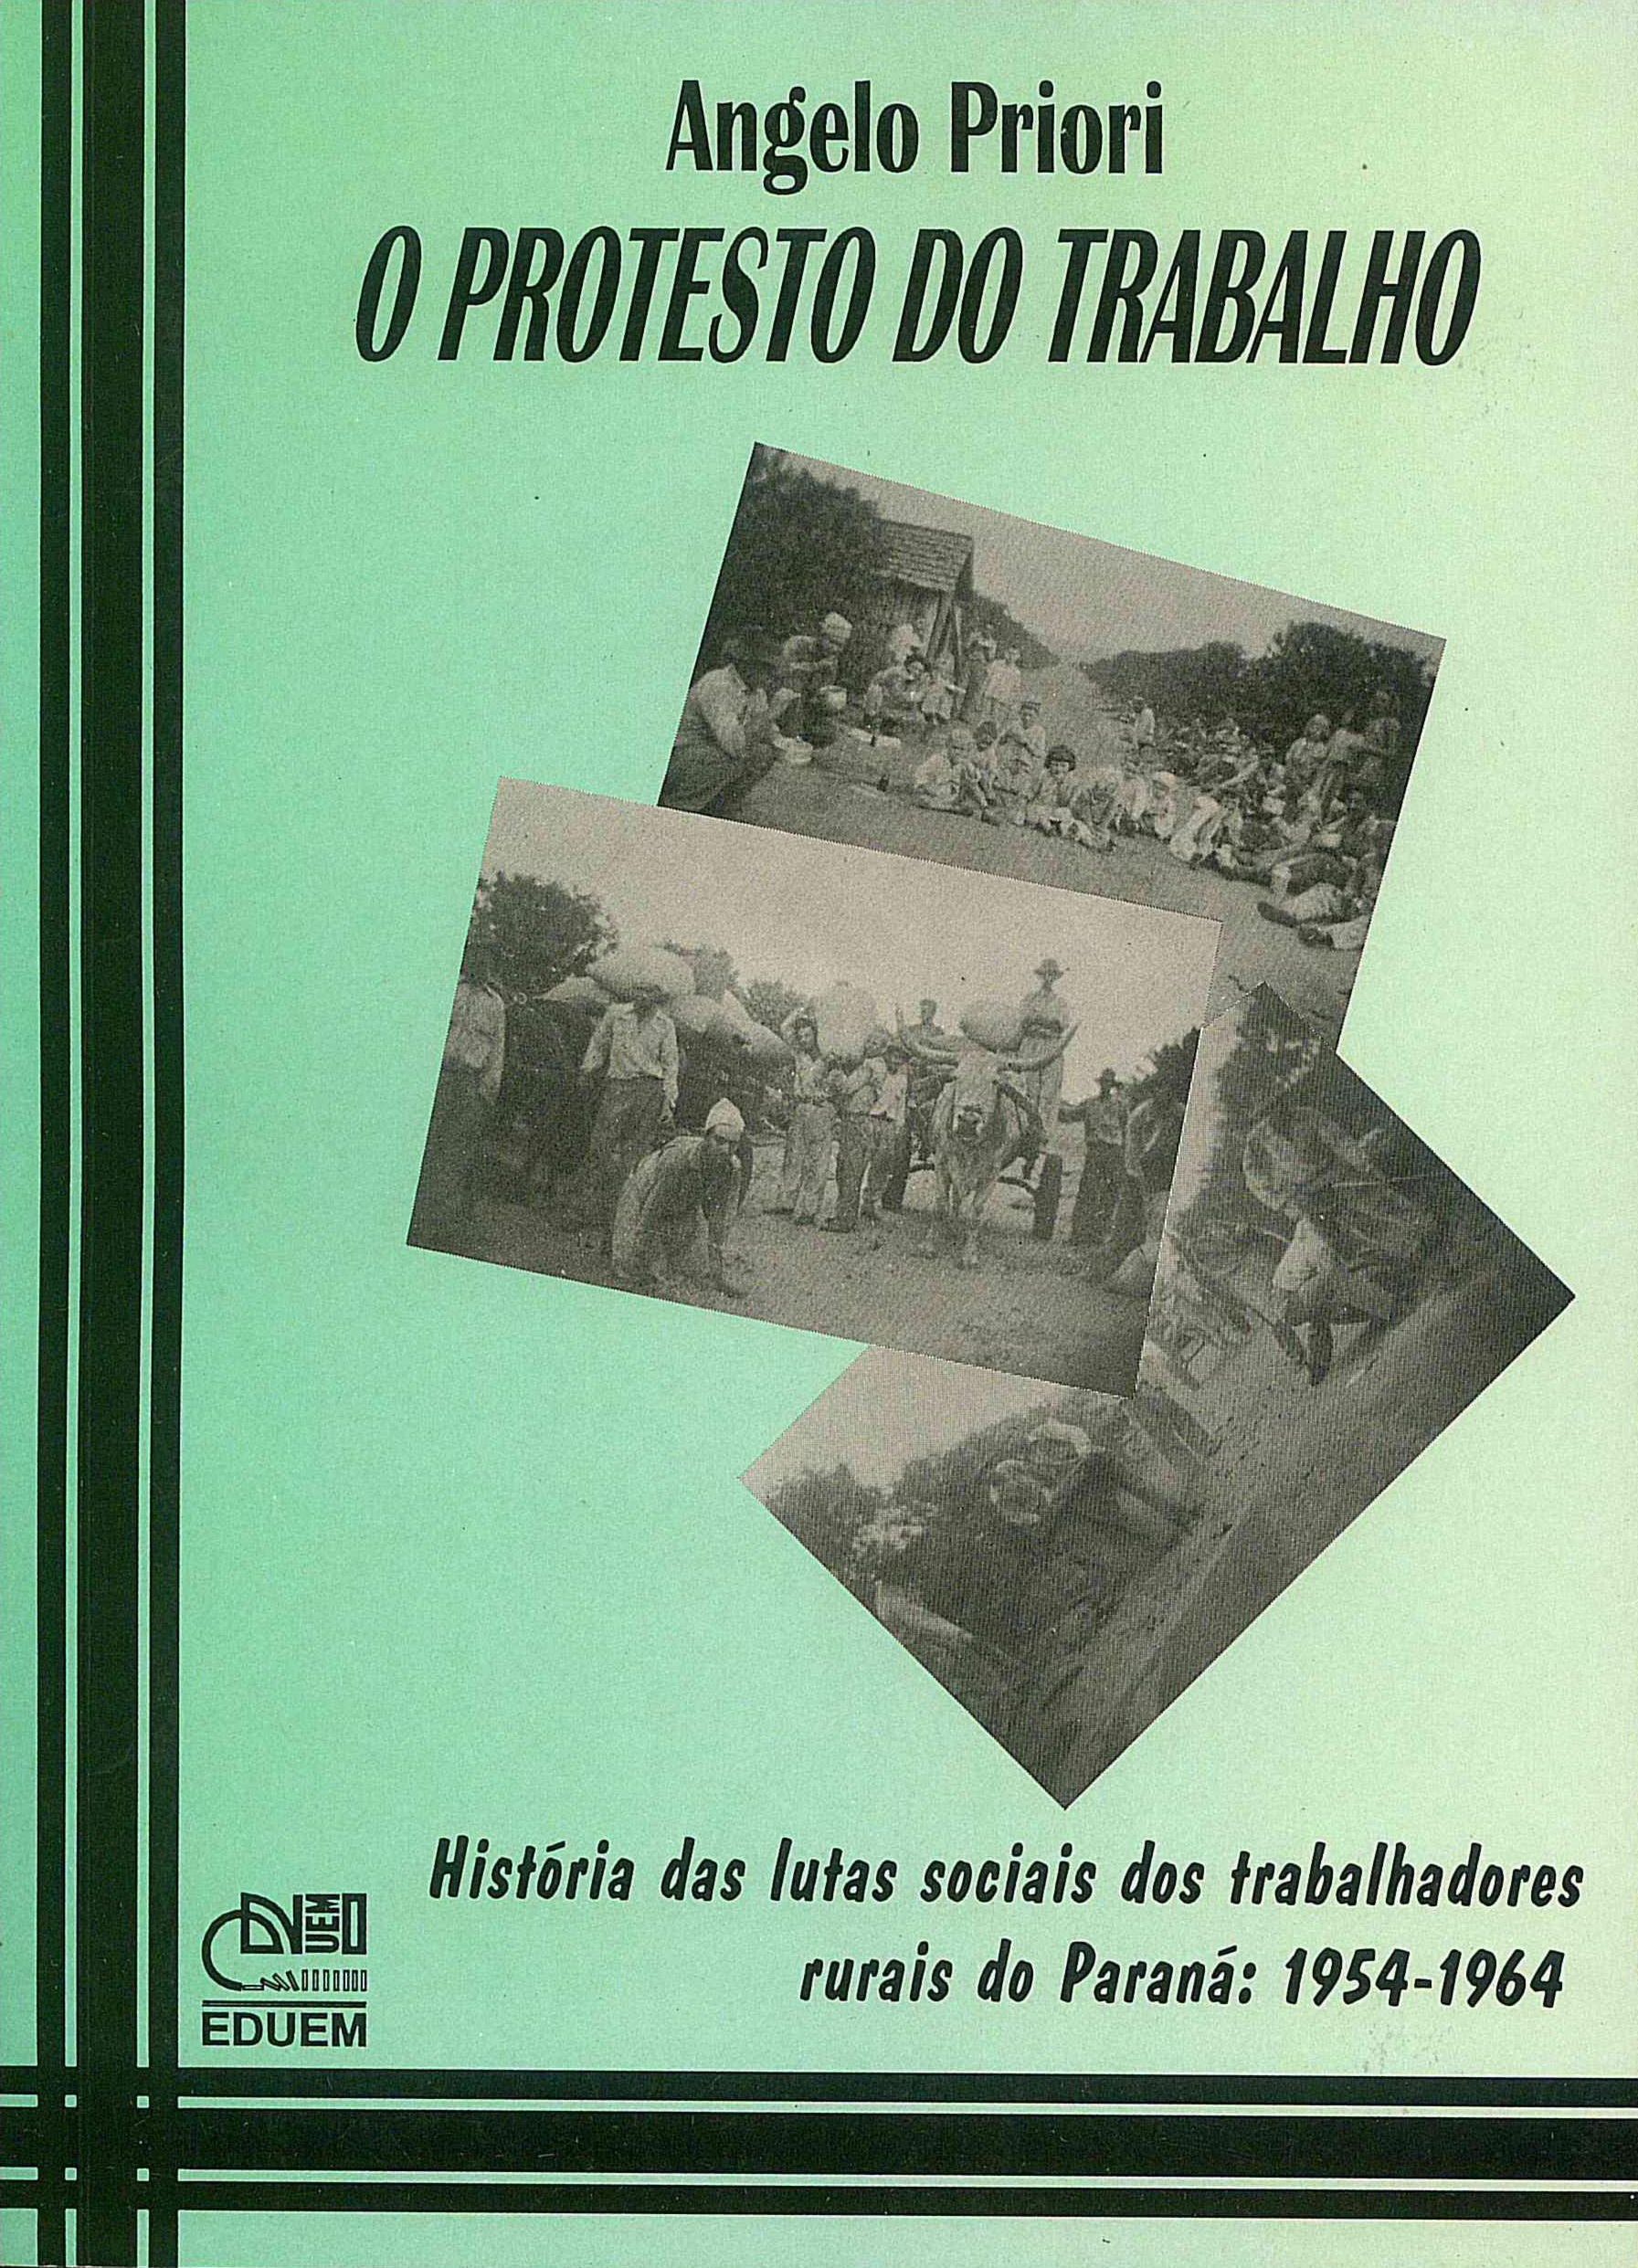 O Protesto do trabalho: história das lutas sociais dos trabalhadores rurais do Paraná (1954-1964)